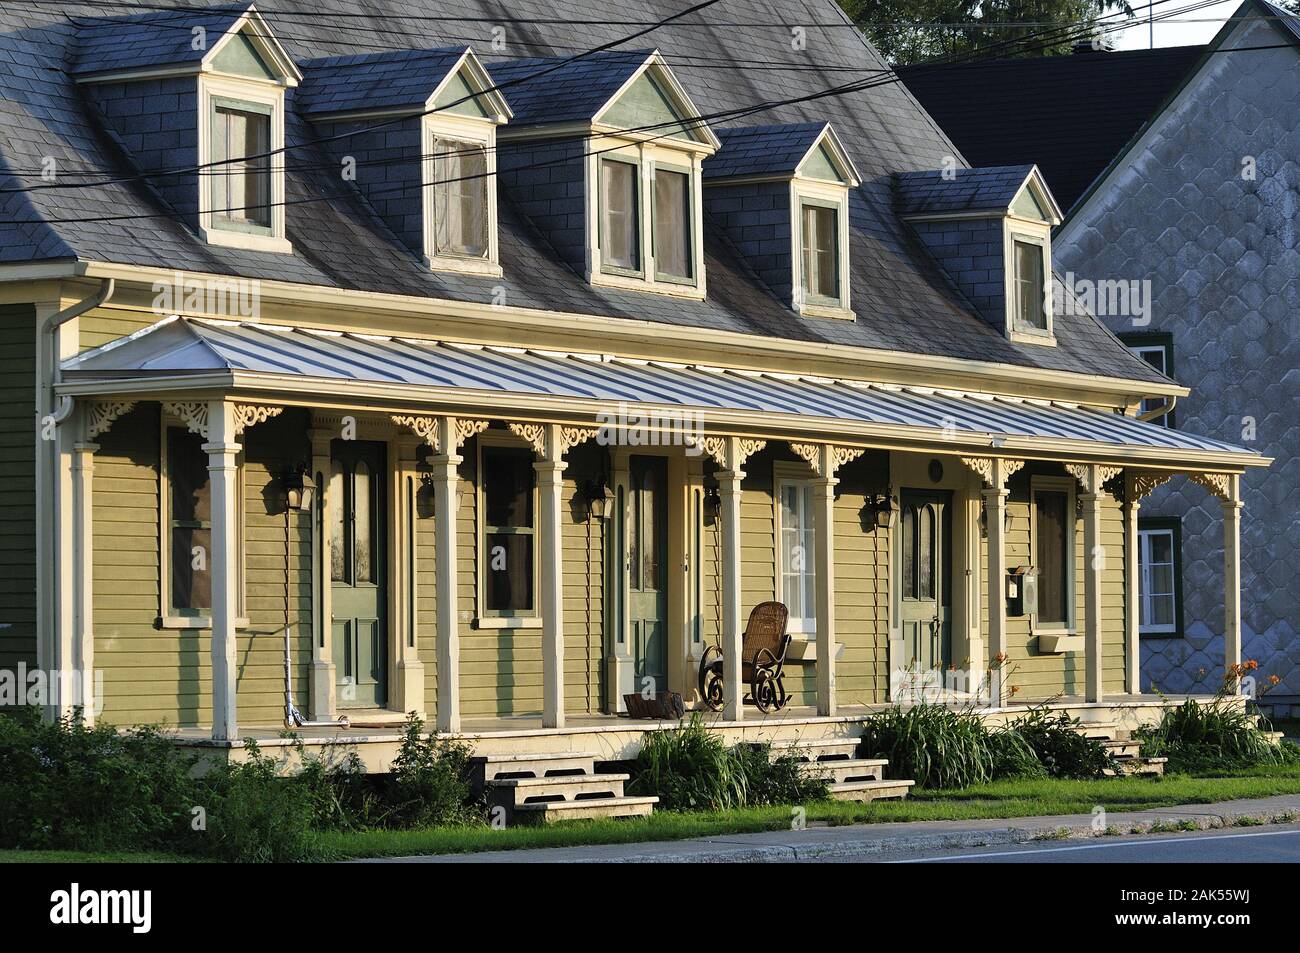 Deschambault : typisch kanadisches Holzhaus mit Terrasse und Schaukelstuhl, Kanada Osten | conditions dans le monde entier Banque D'Images